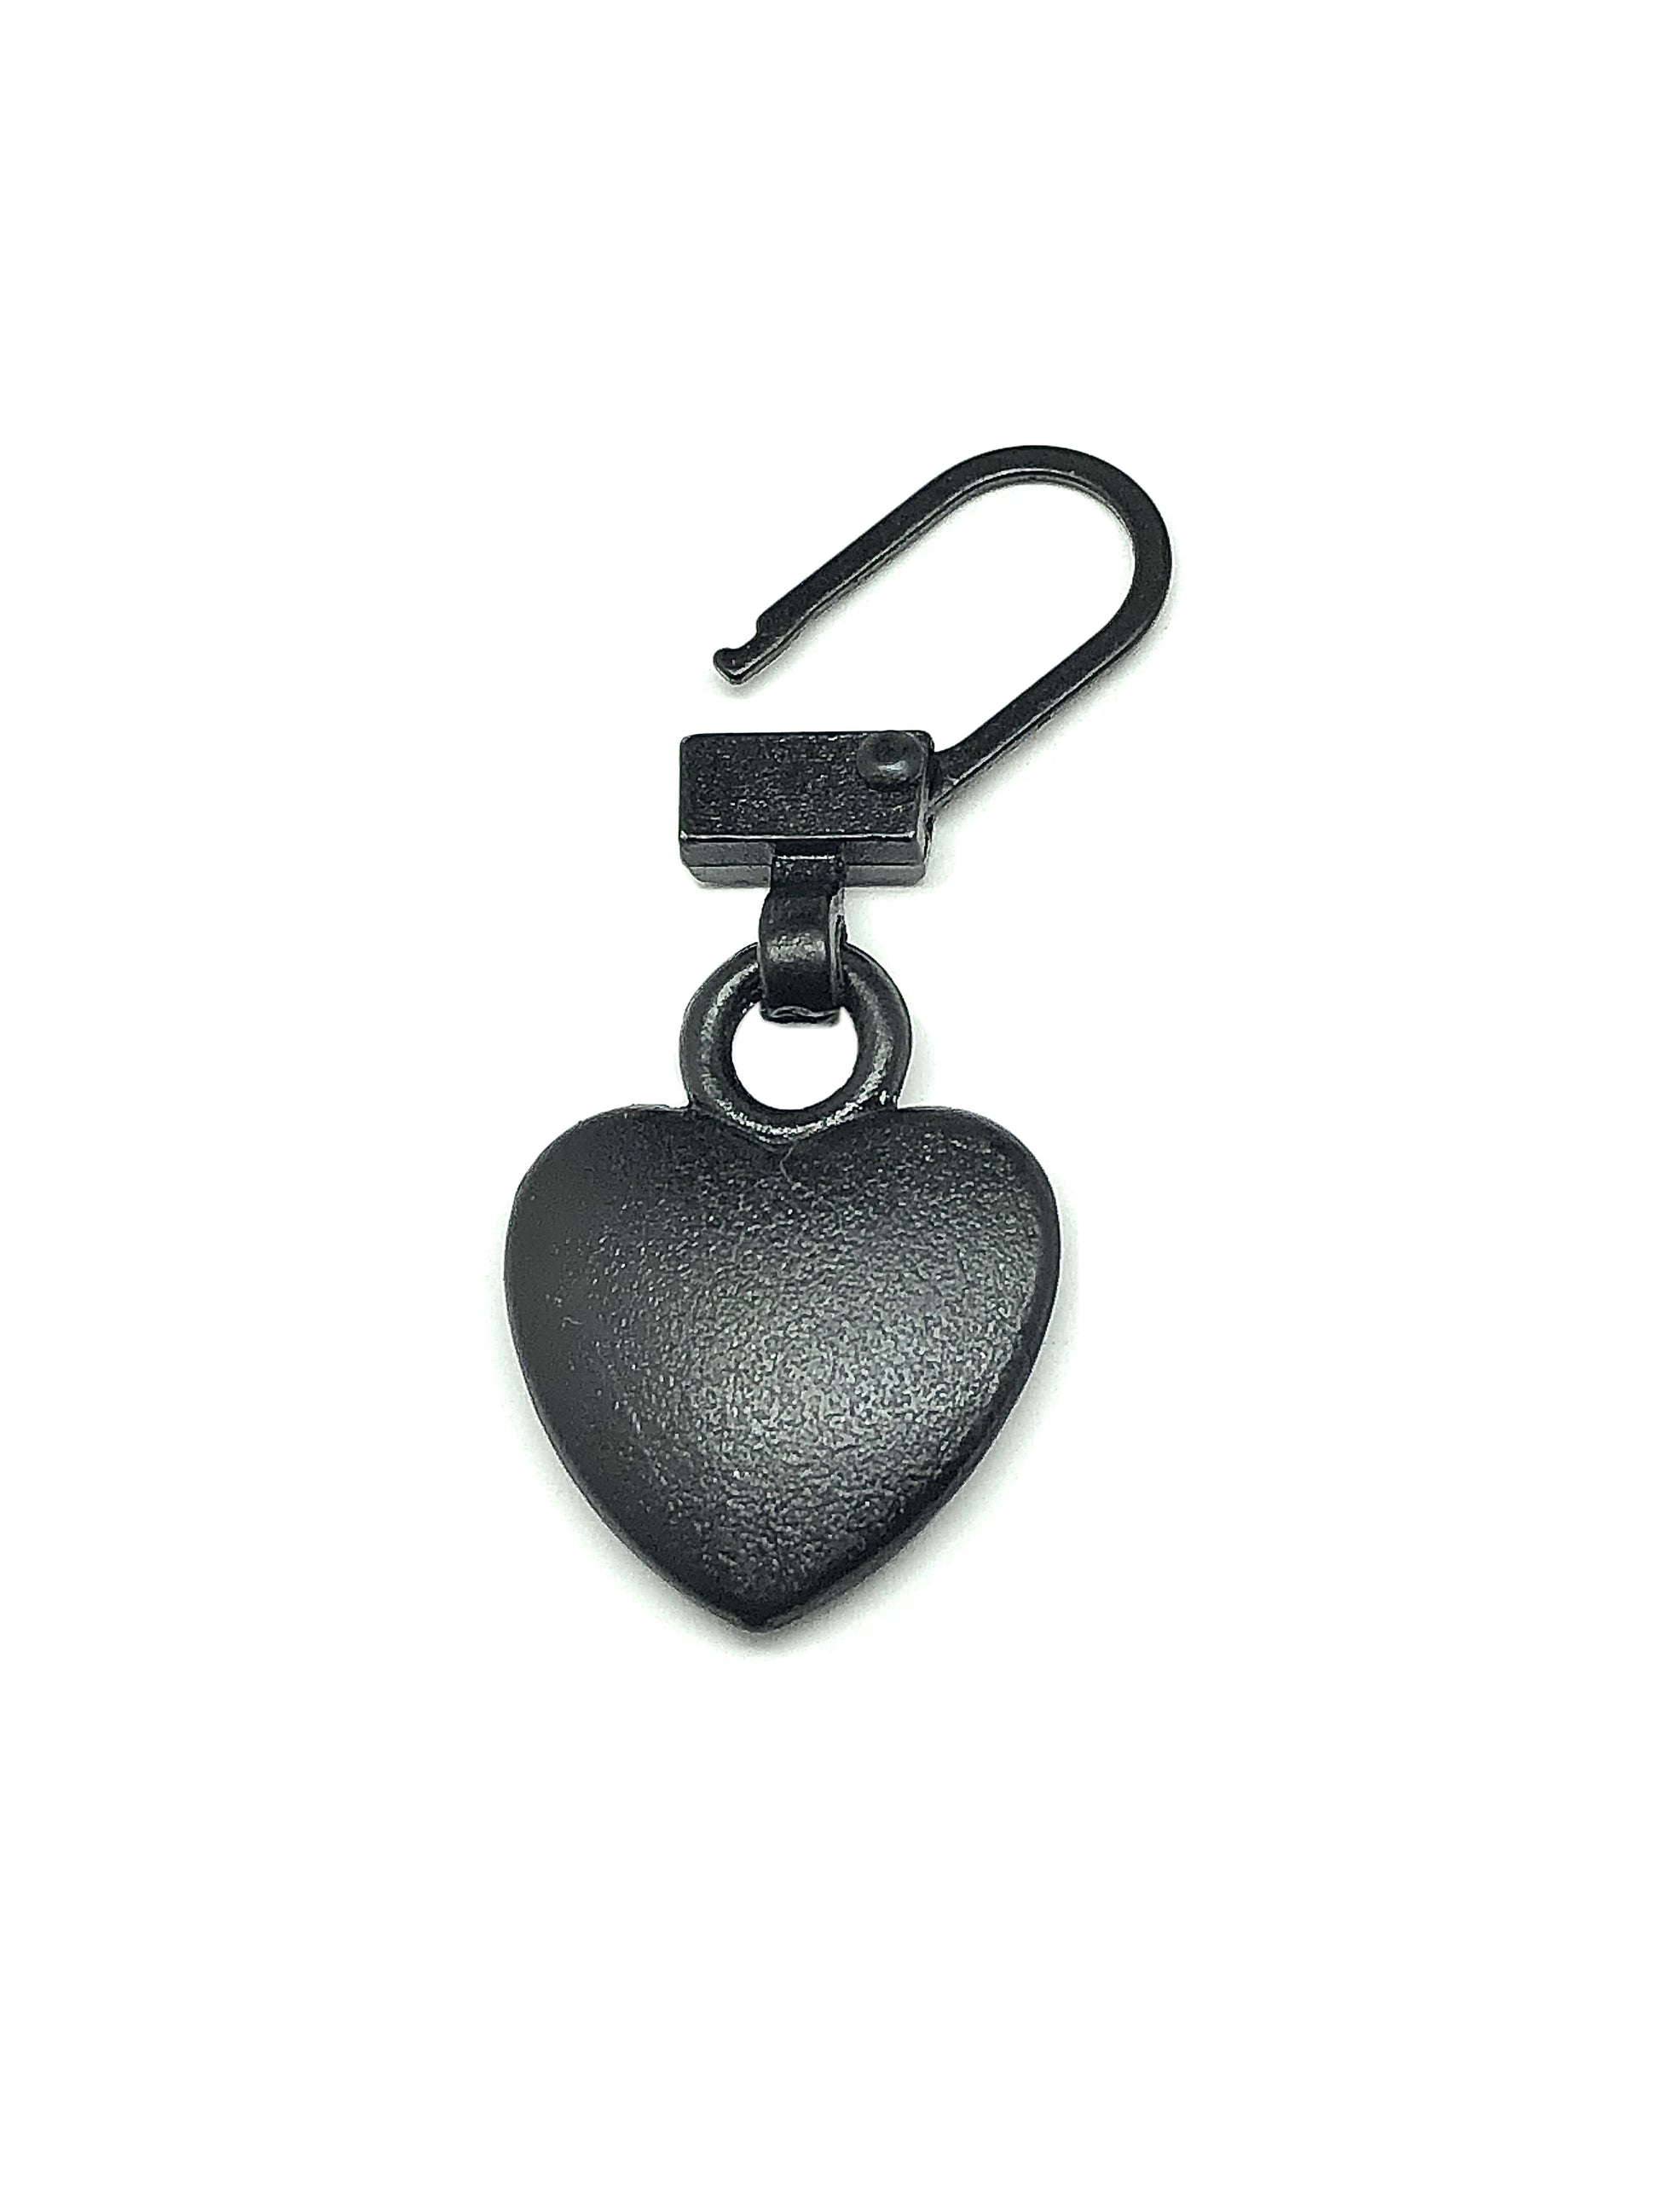 Zipper Repair Charm Heart Rustic Black - for Repair or Decorate